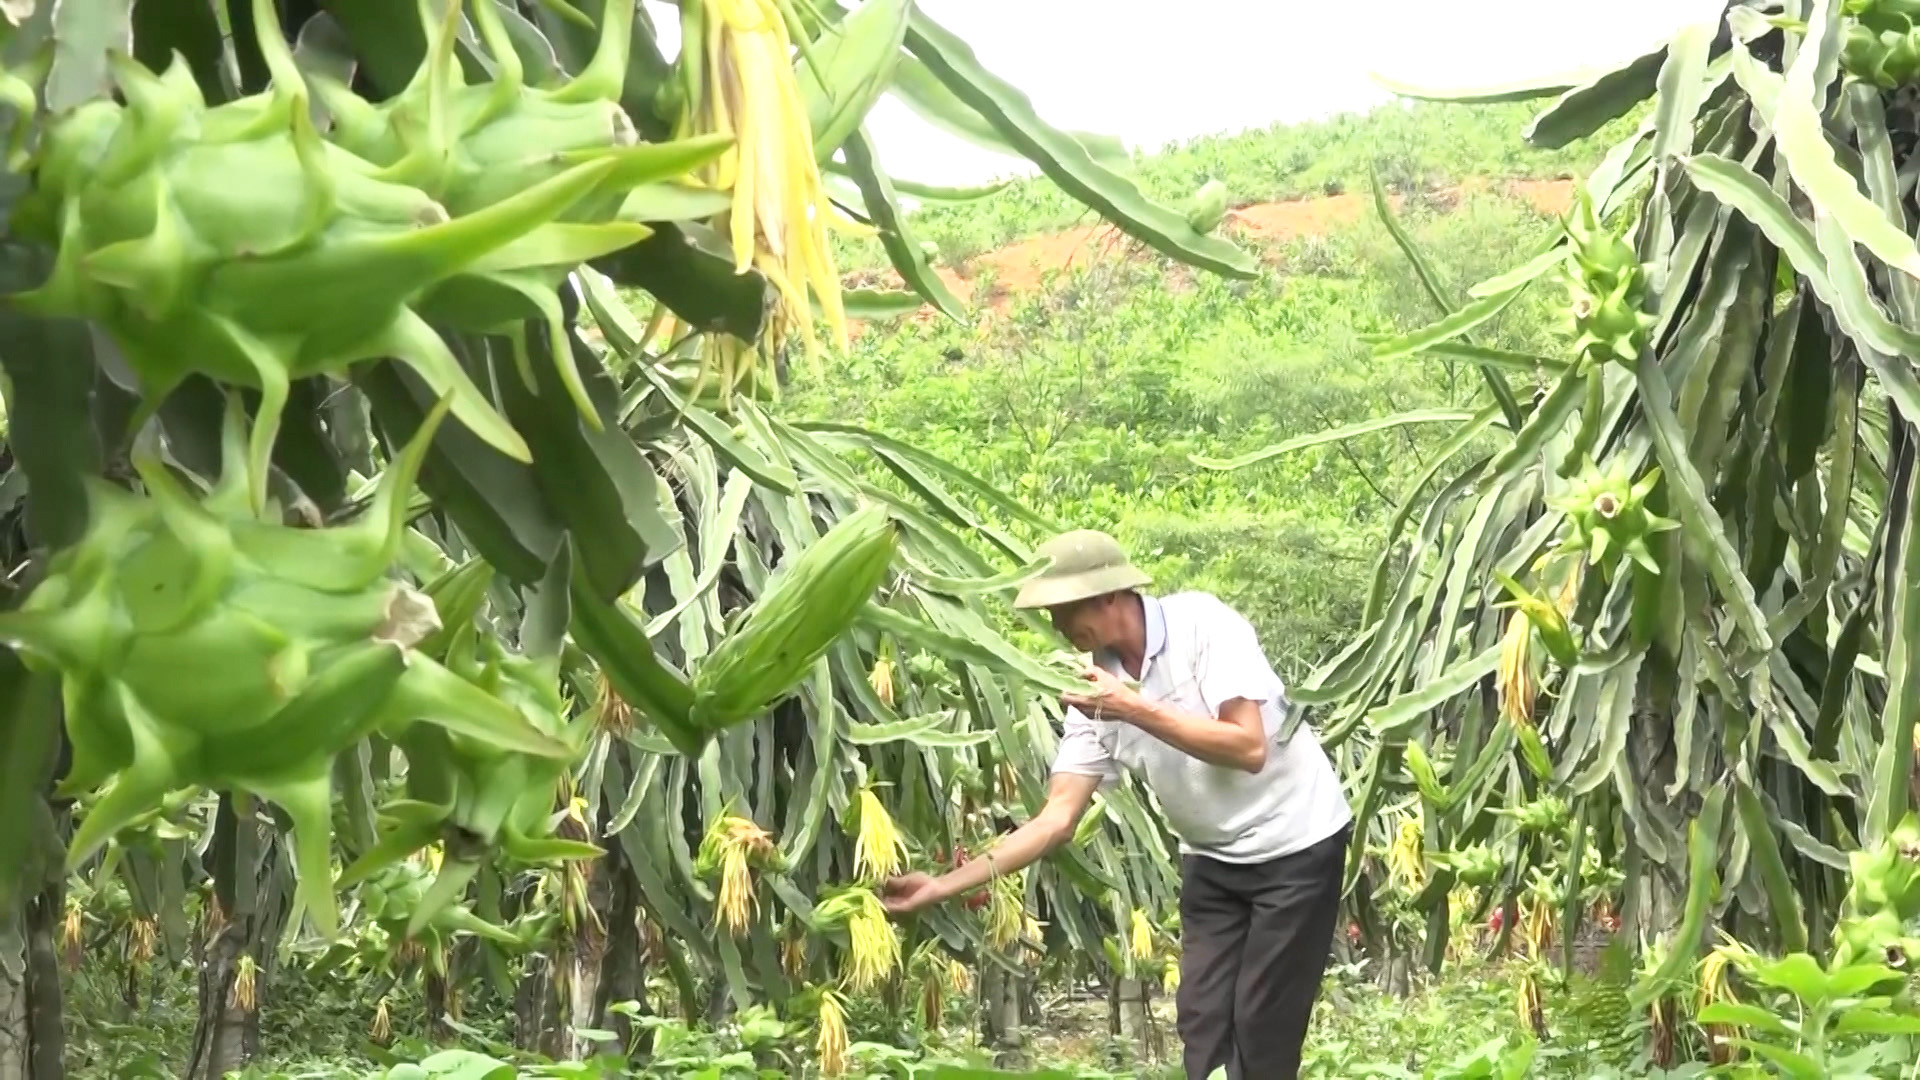 Mô hình trồng chè hoa vàng được hỗ trợ từ Đề án 198 của gia đình anh, xã Thanh Sơn, huyện Ba Chẽ cho hiệu quả kinh tế cao.